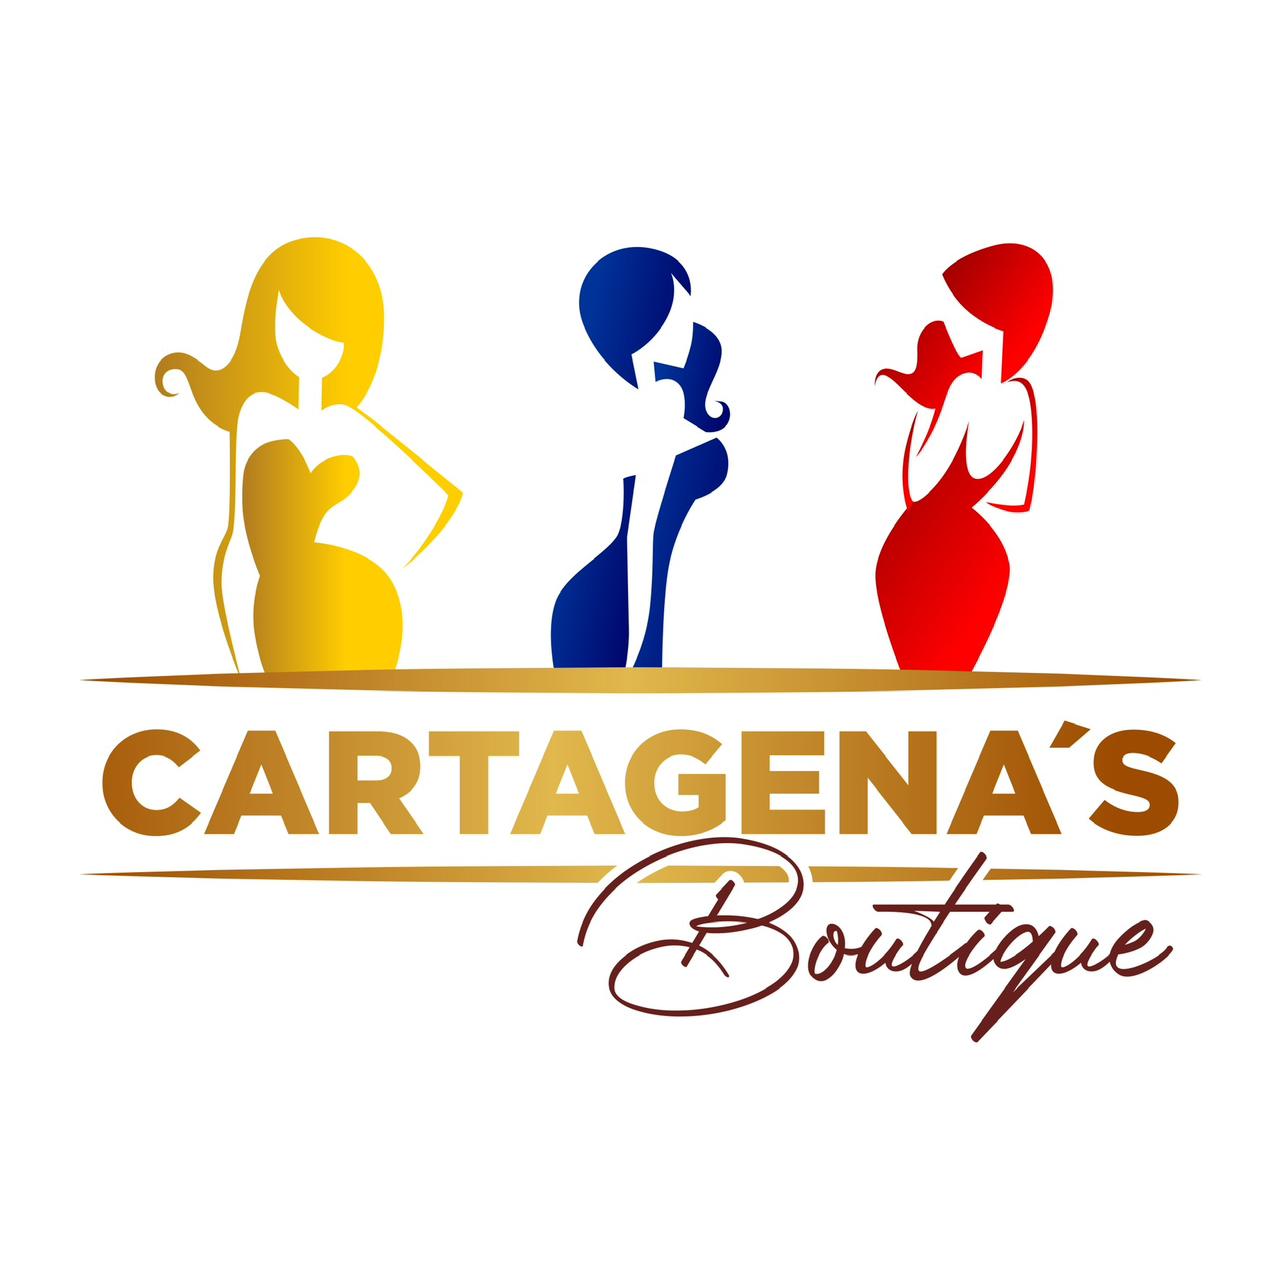 Cartagenas boutique